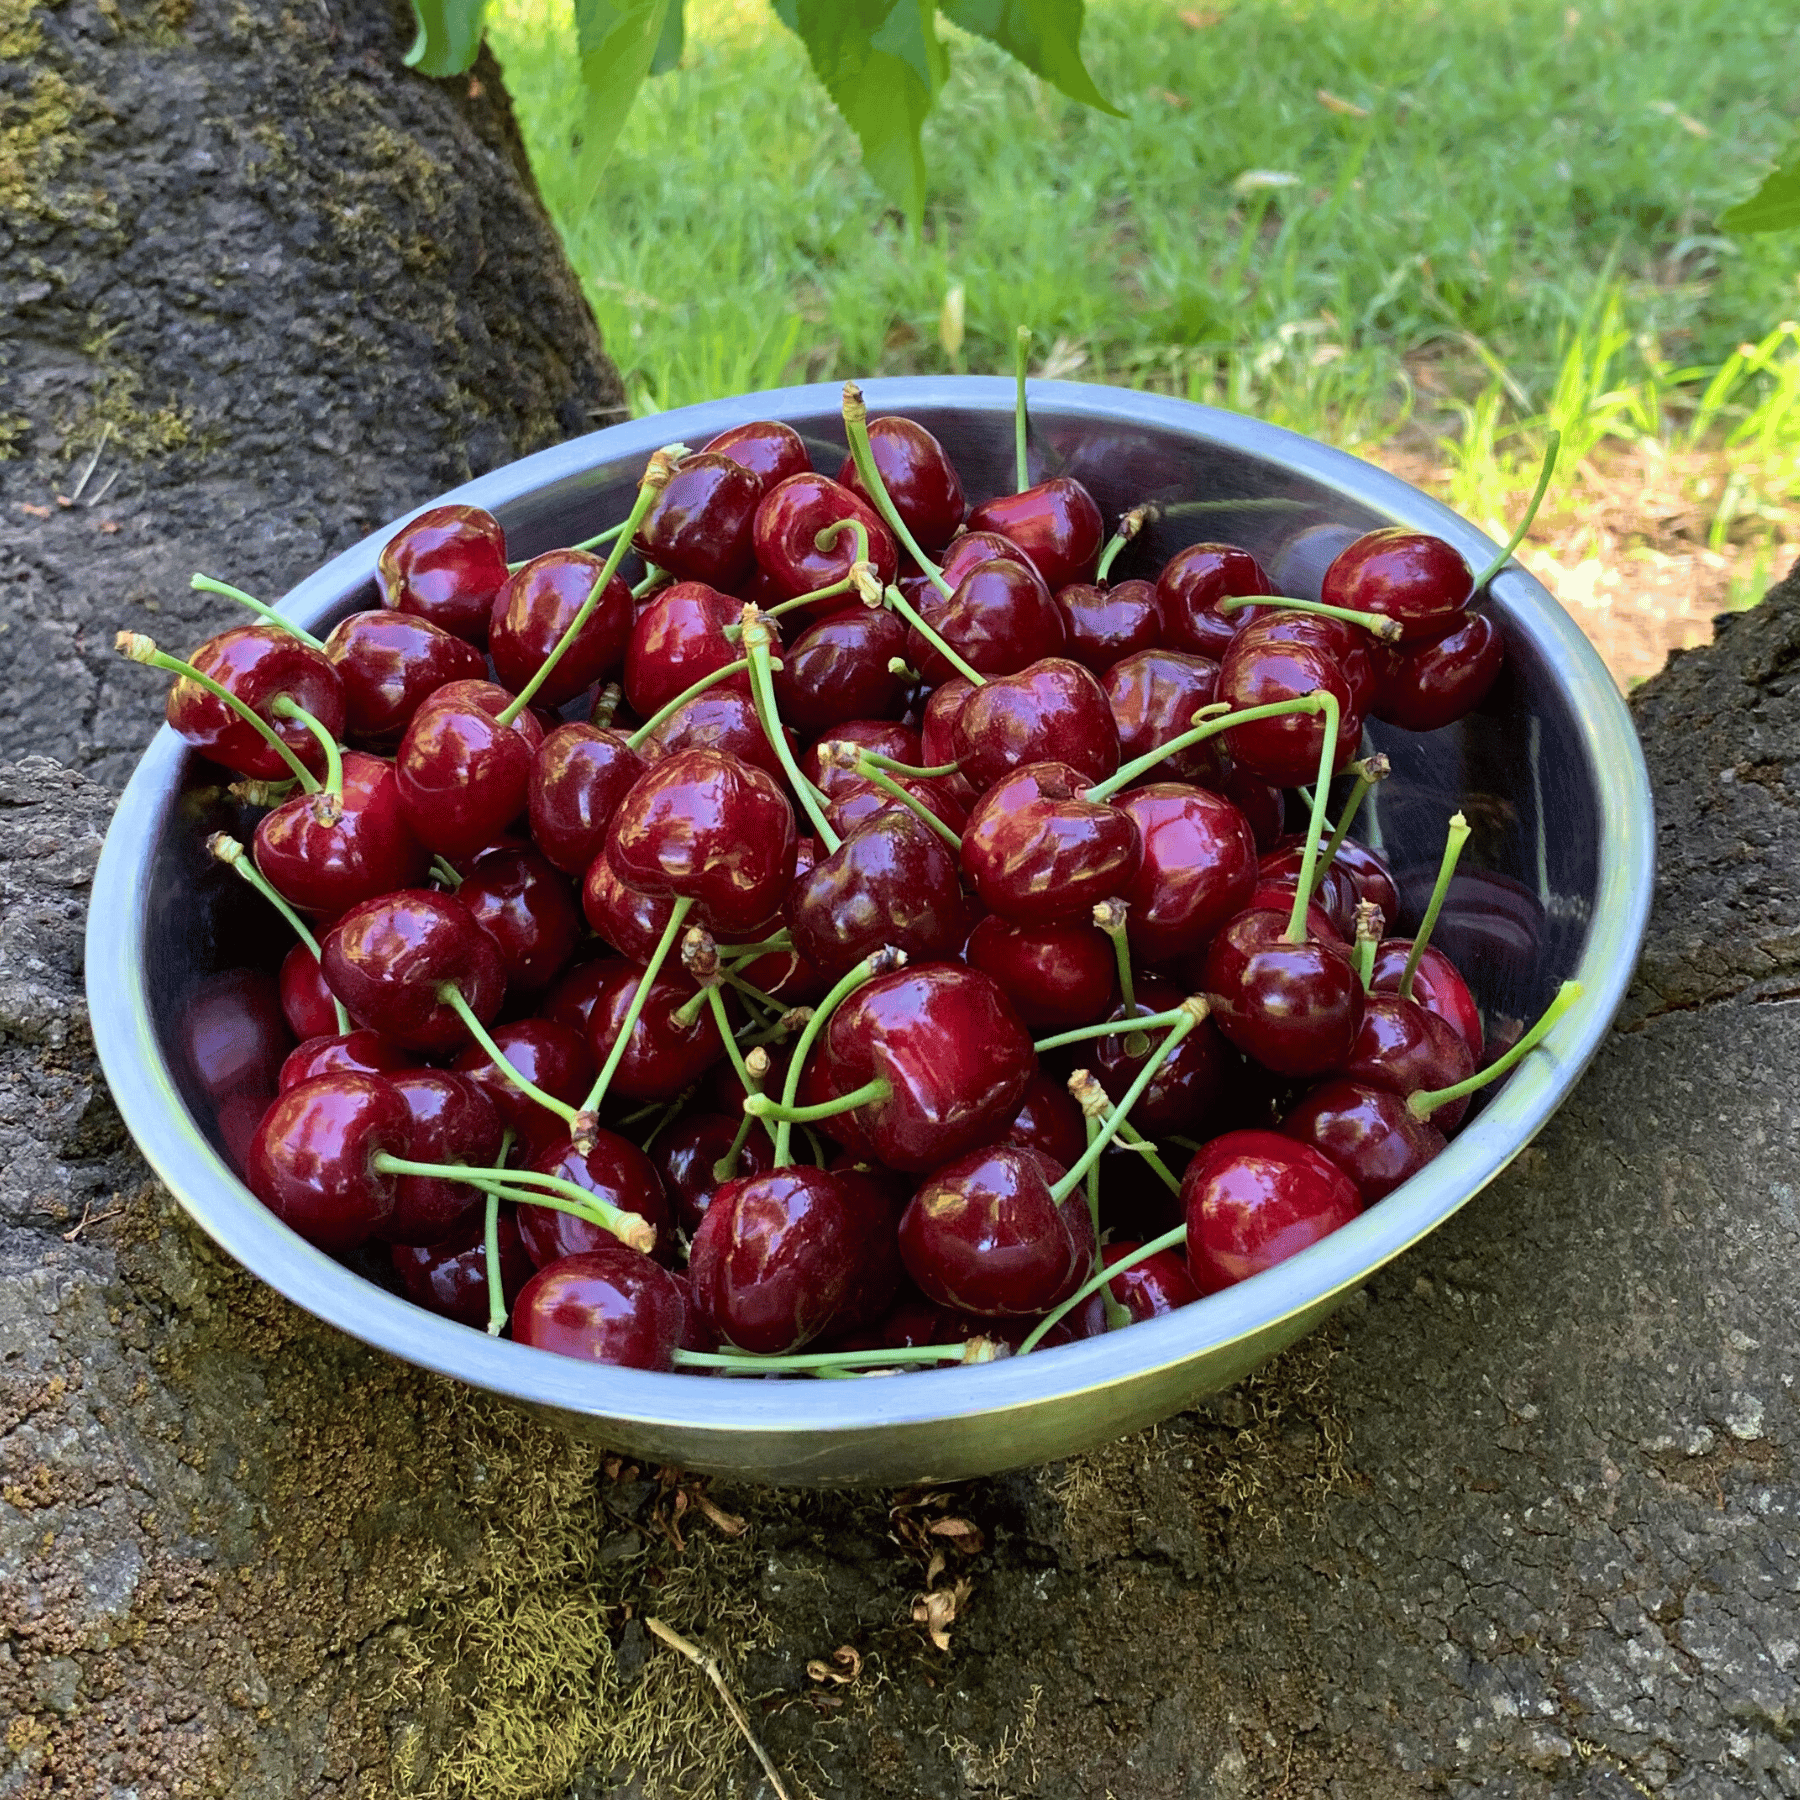 Organic Bing Cherries